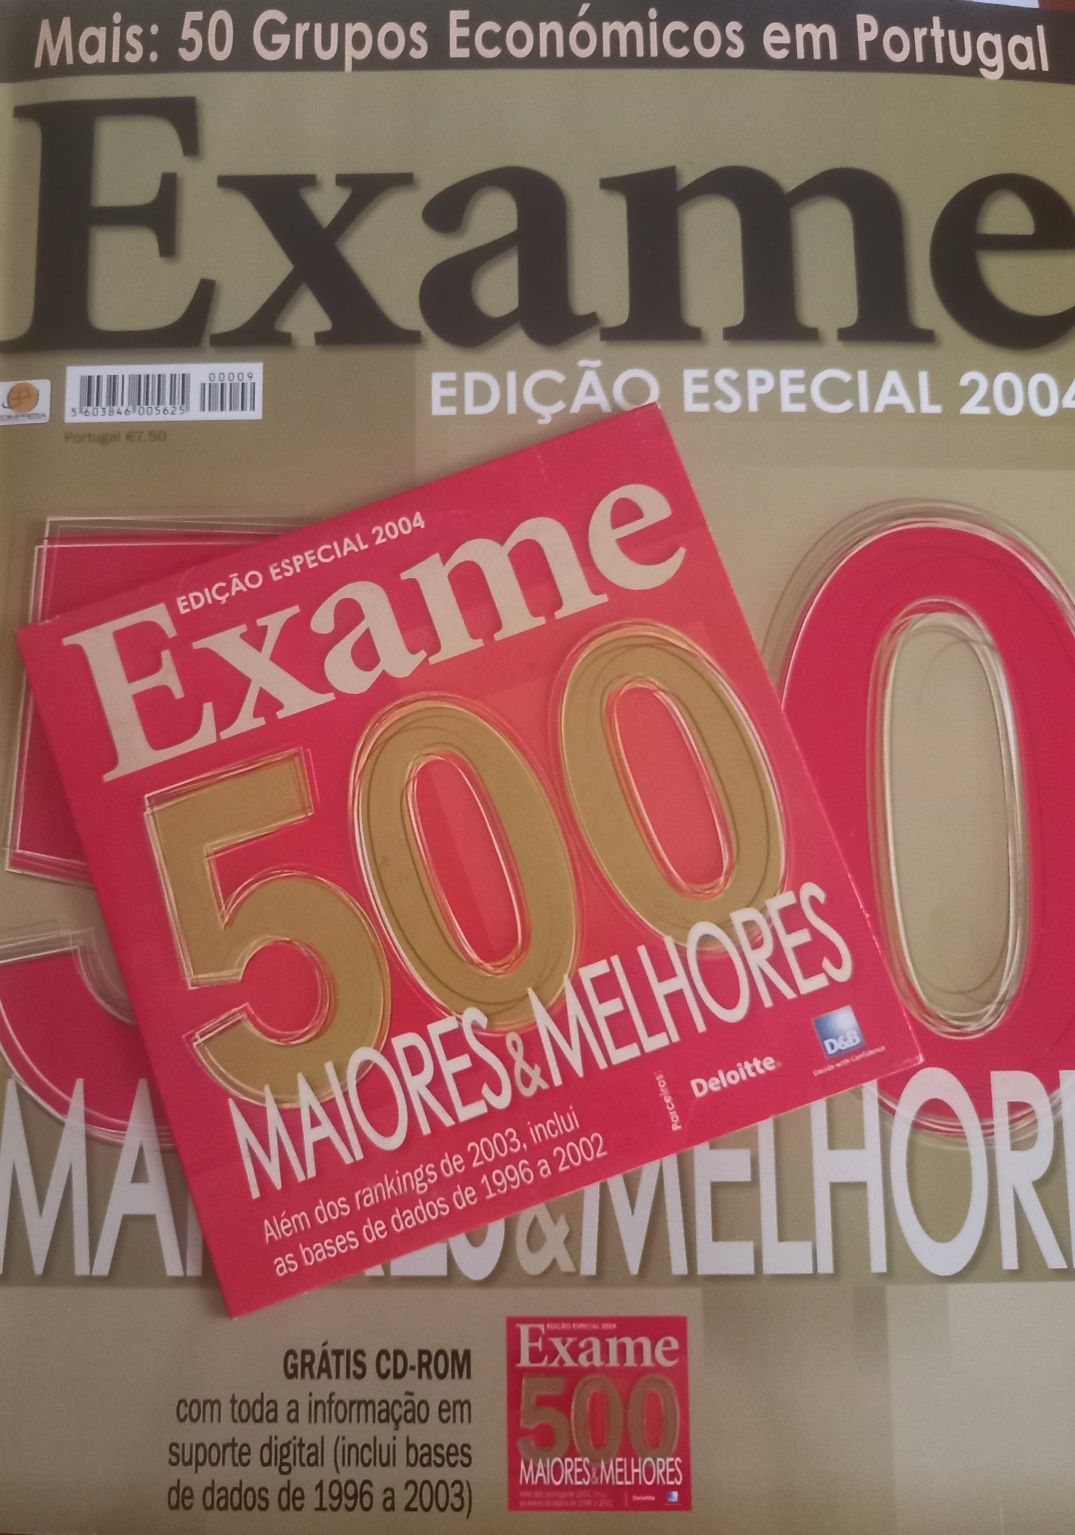 500 maiores 2004 e os 50 grupos económicos em revista e CD-ROM